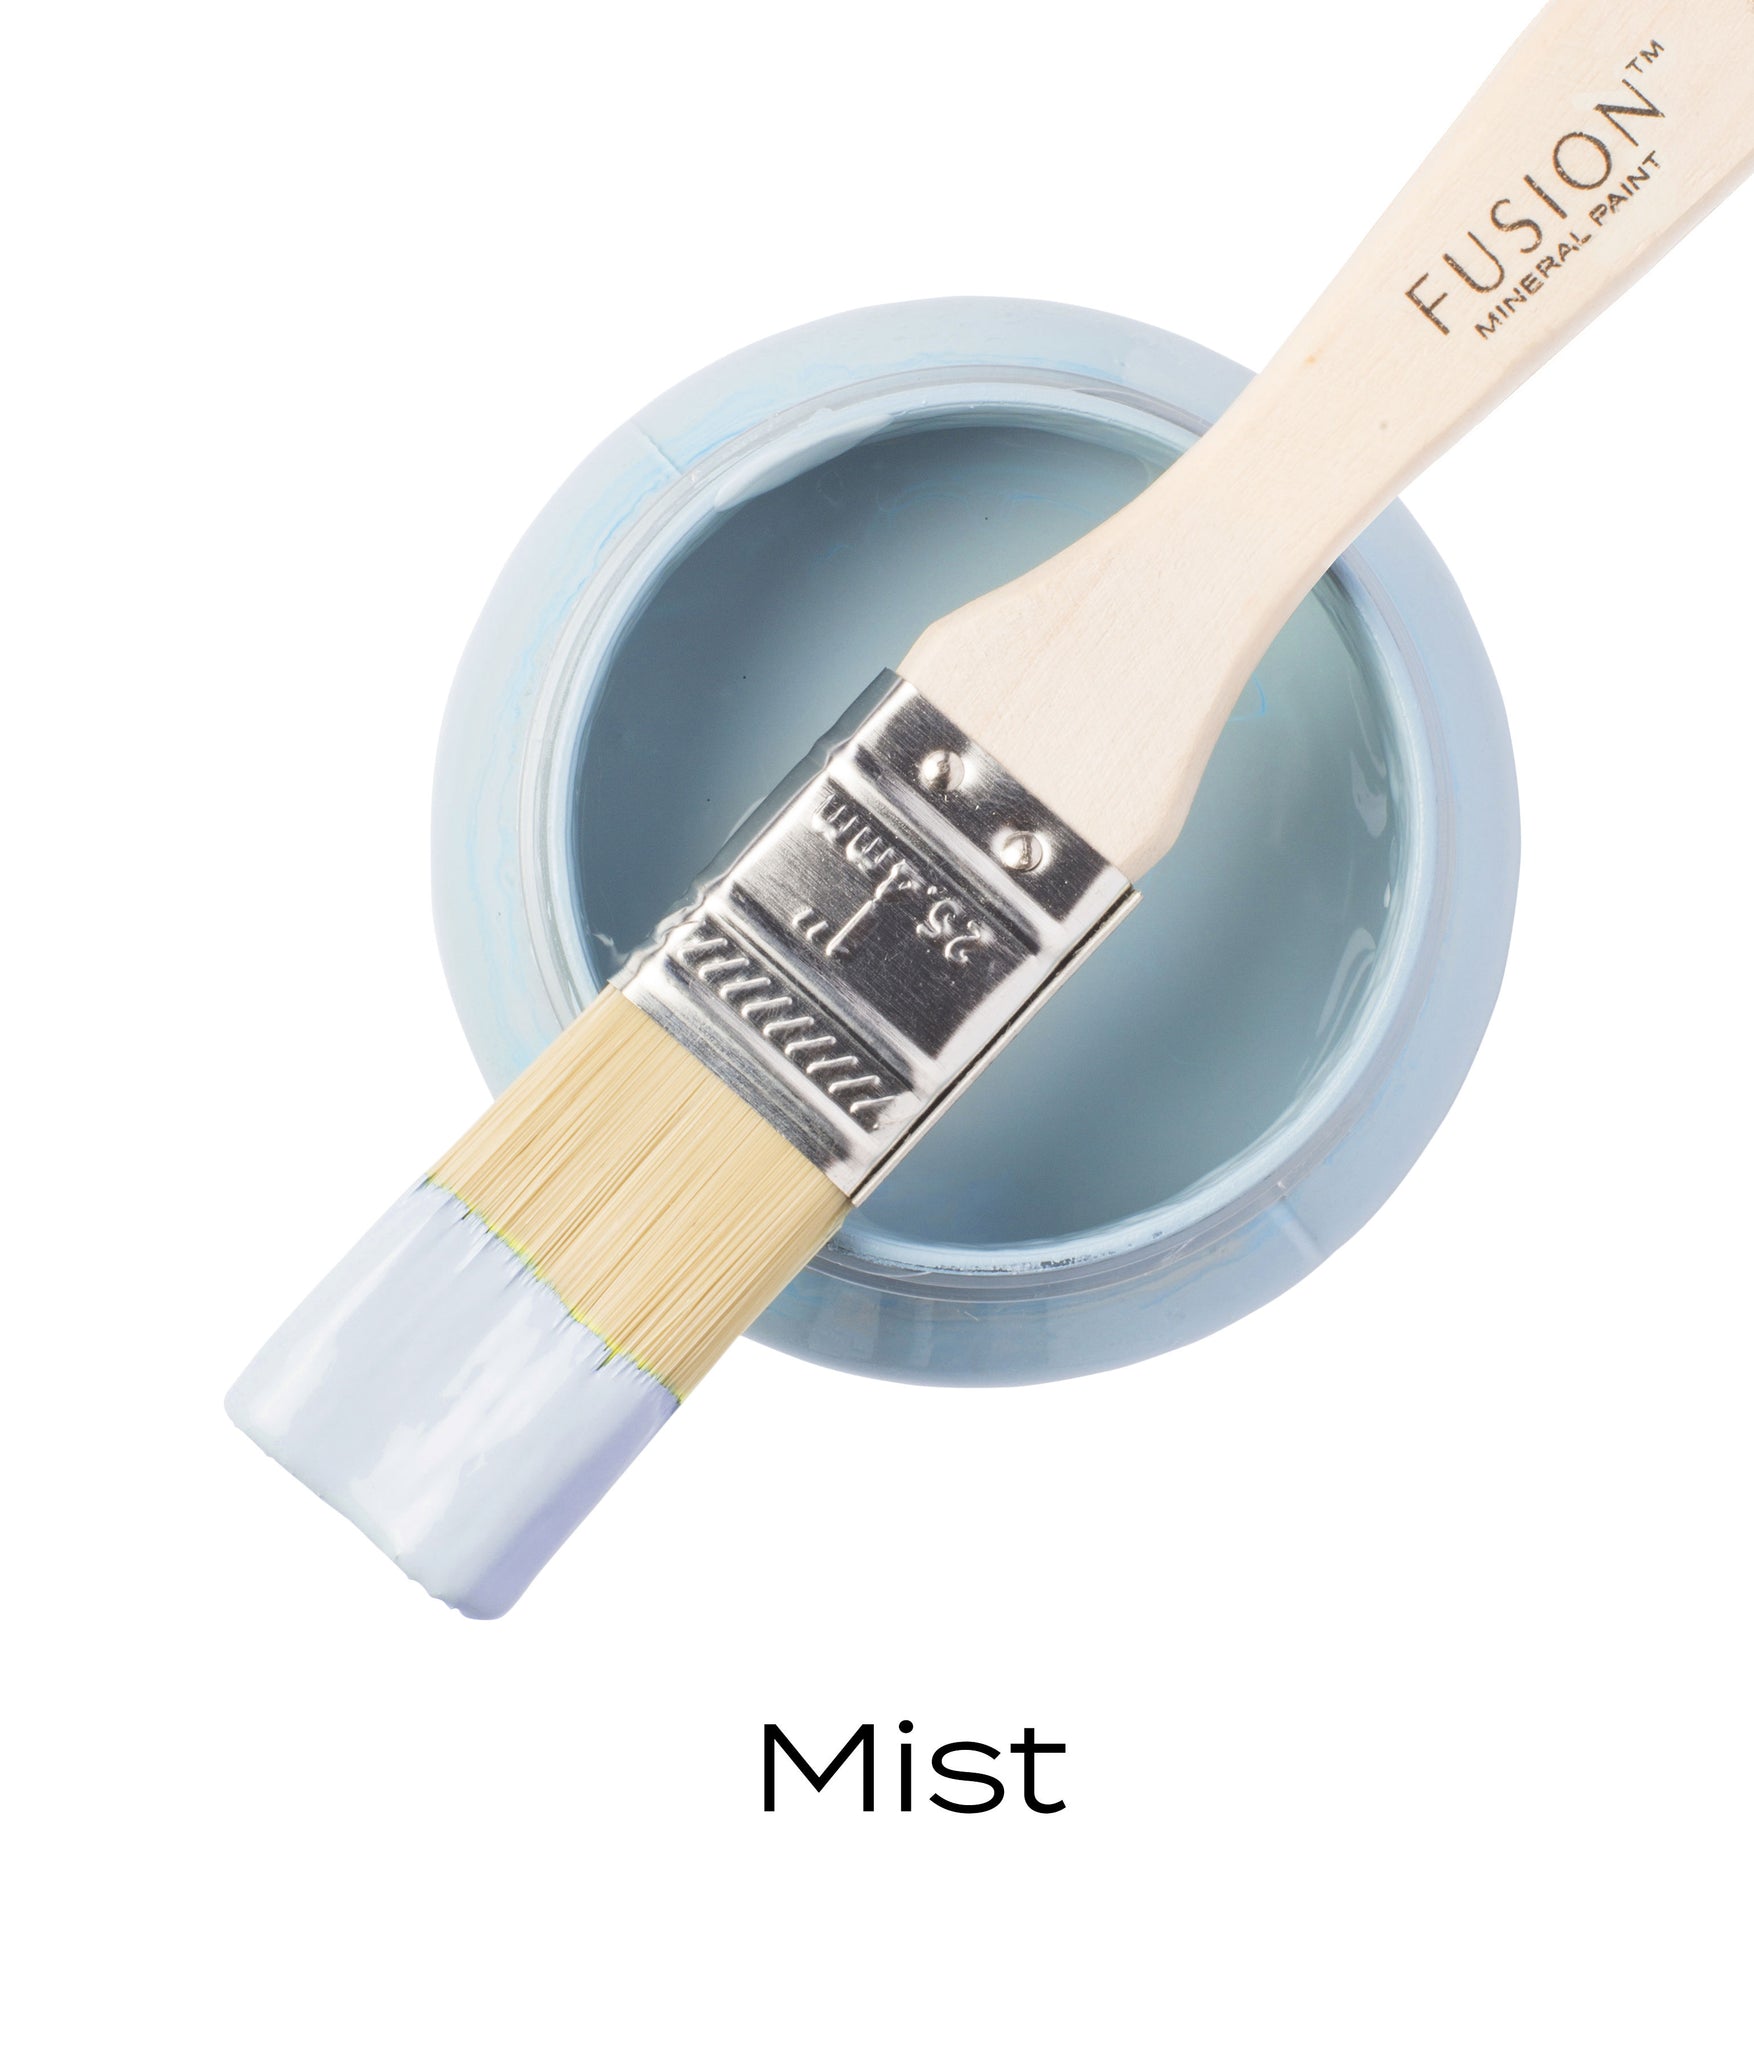 Fusion mineral paint - Mist